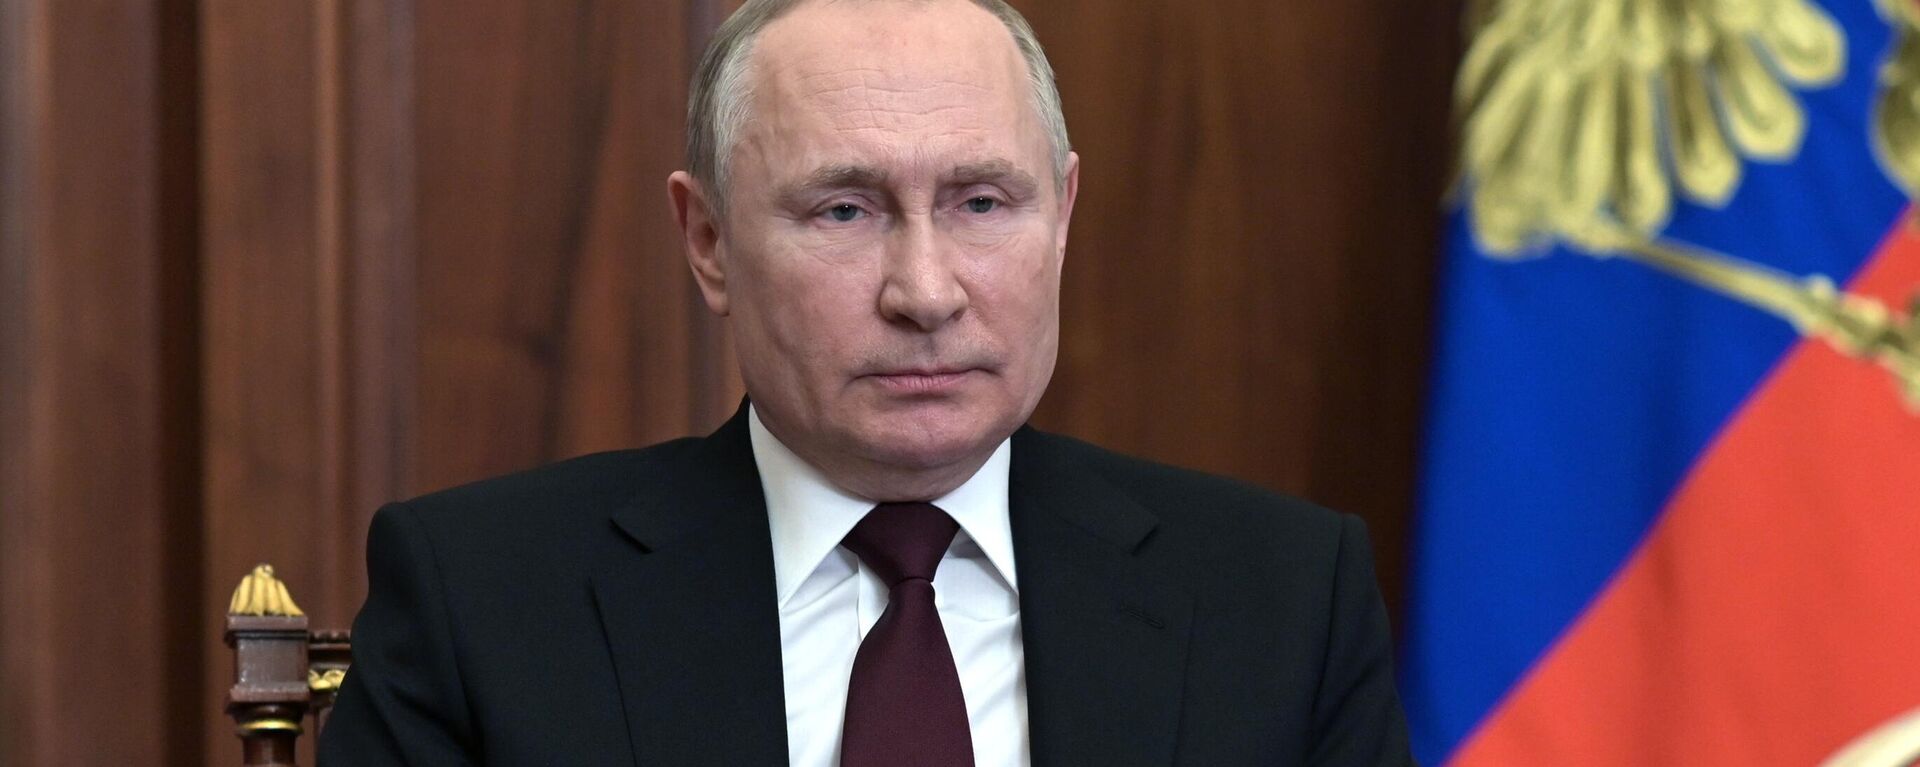 Krievijas prezidenta Vladimira Putina uzruna sakarā ar situāciju Donbasā - Sputnik Latvija, 1920, 23.02.2022